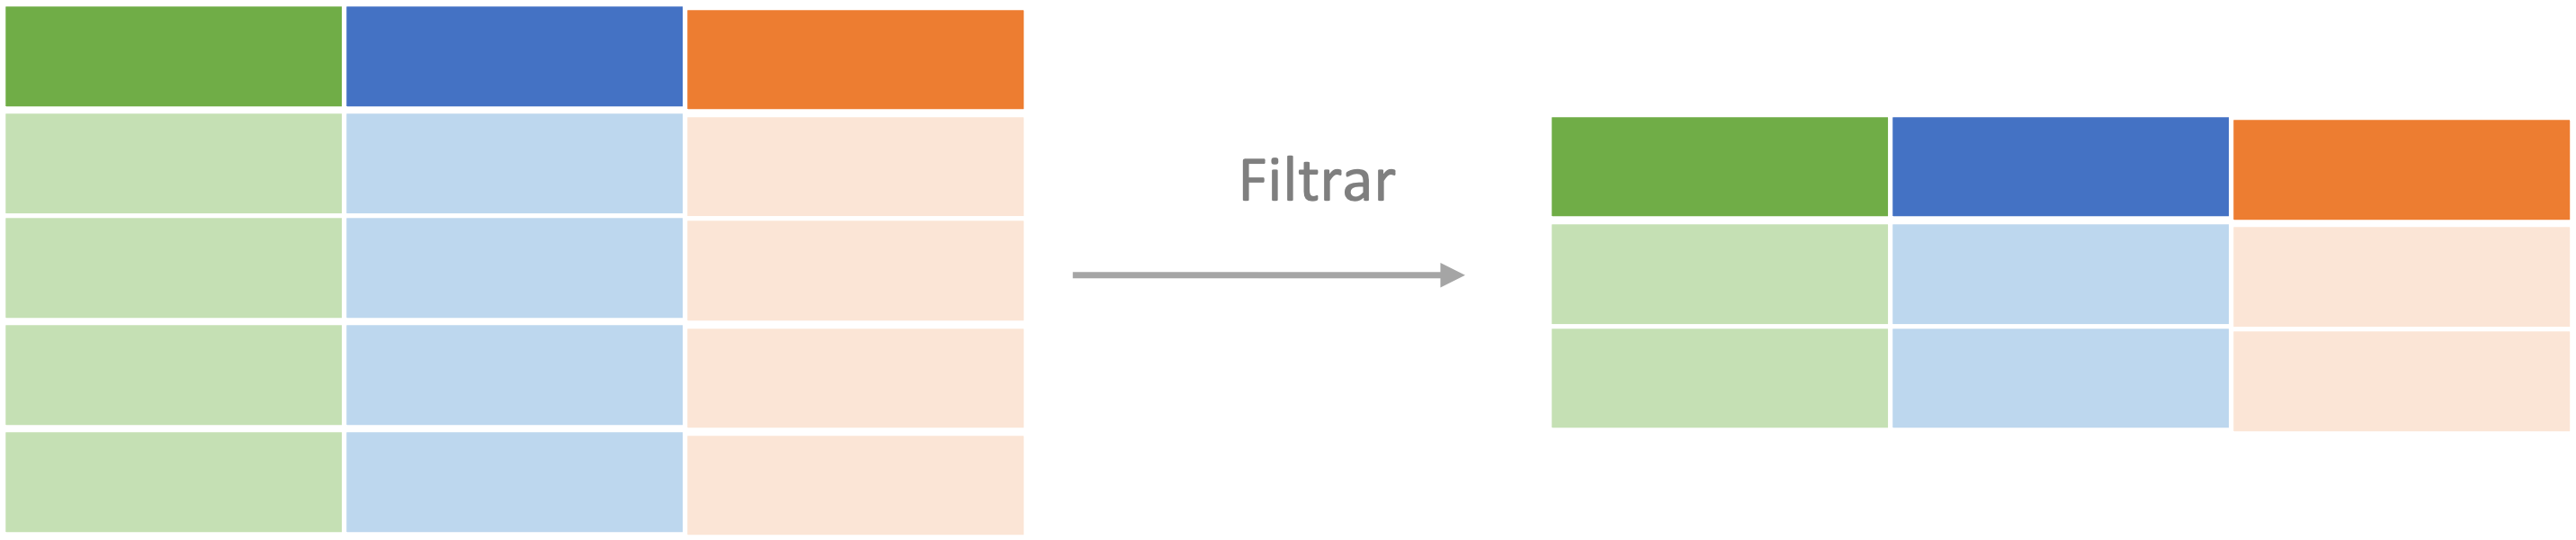 Representación del proceso de filtrado de un objeto de clase tibble o data.frame